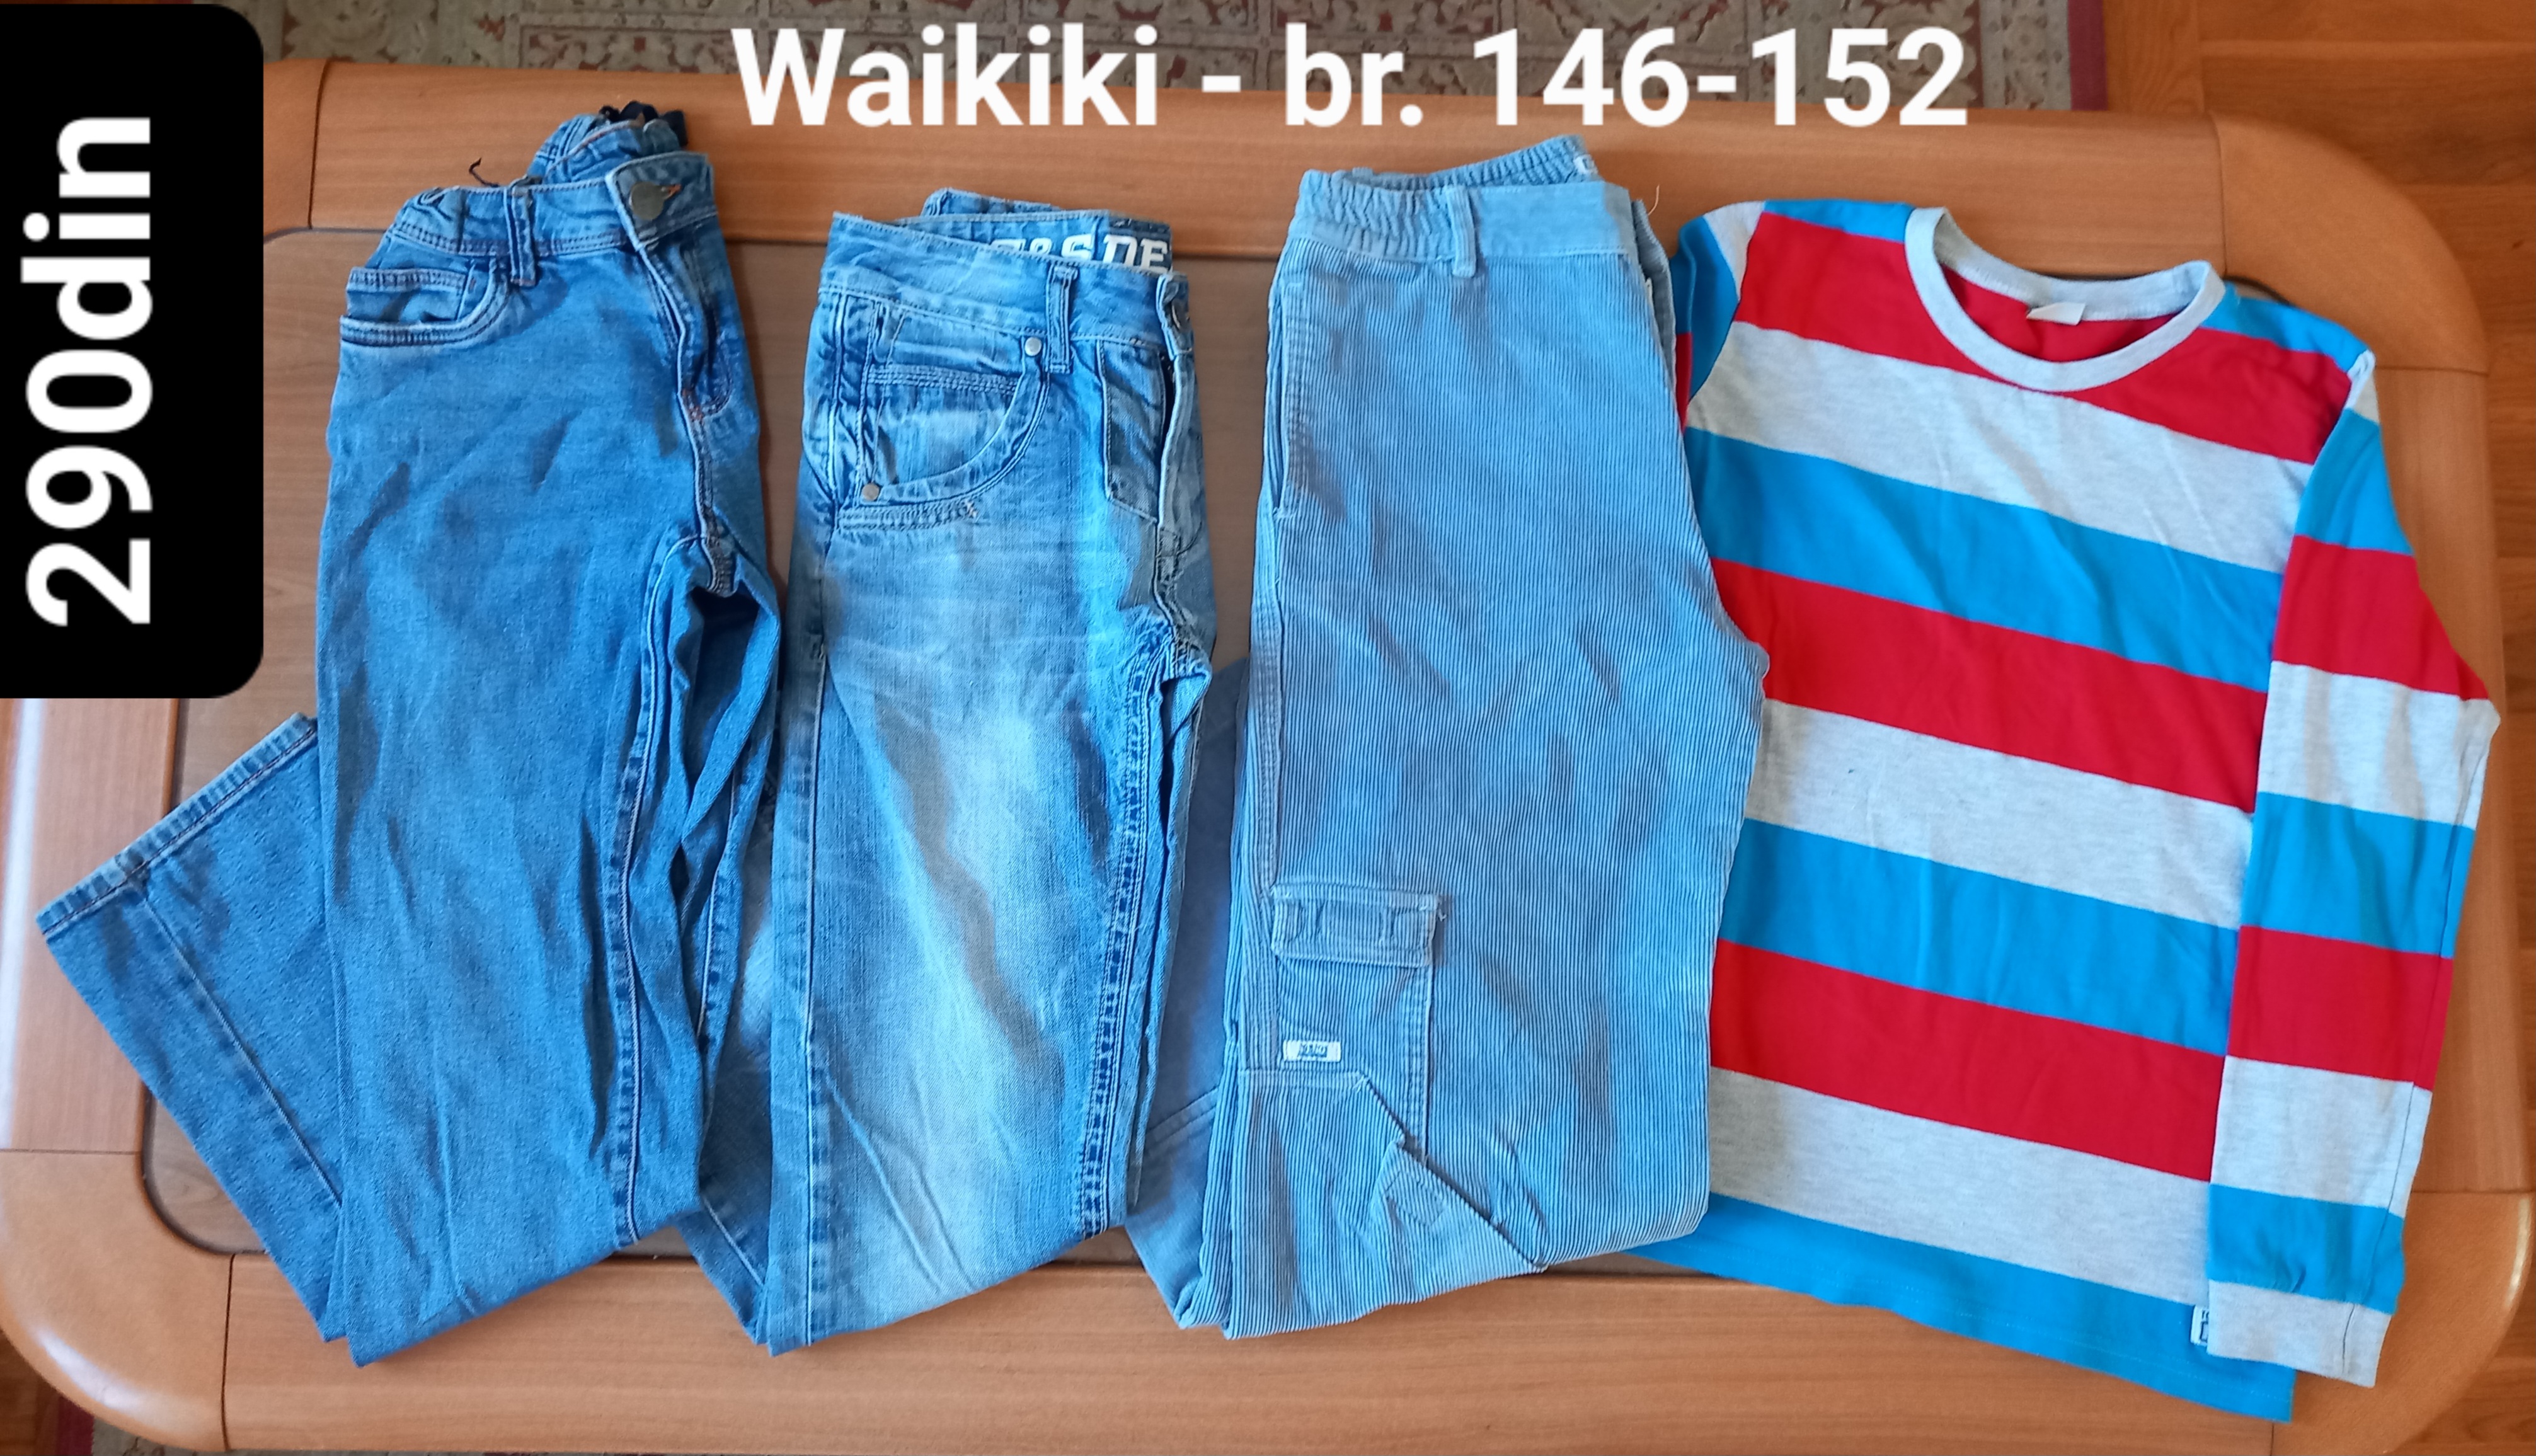 Waikiki majica farmerke za dečake br. 146-152